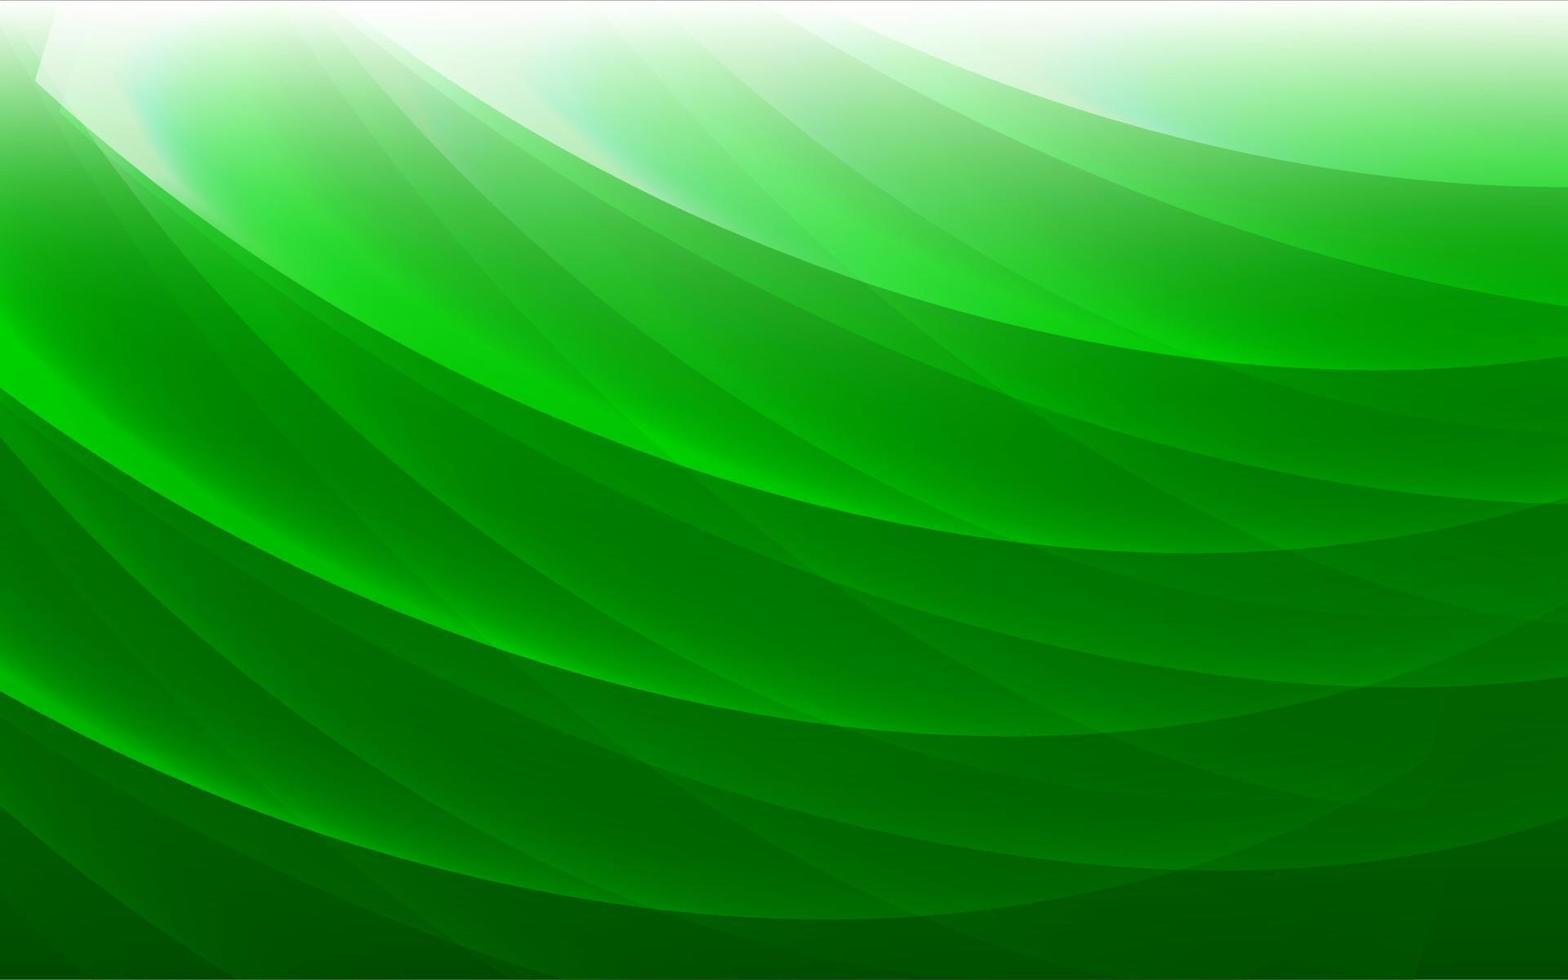 abstrait vert élégant avec une vague brillante. vecteur de fond vert dégradé abstrait avec des formes brillantes.